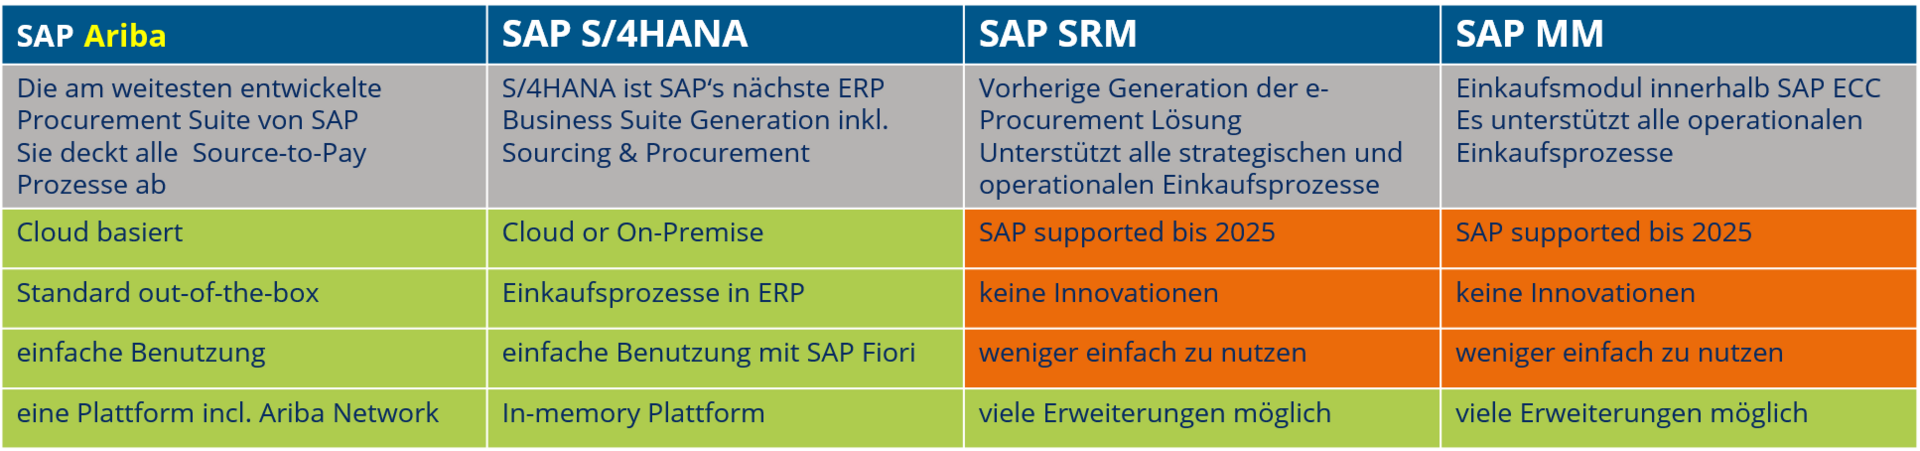 SAP Programme